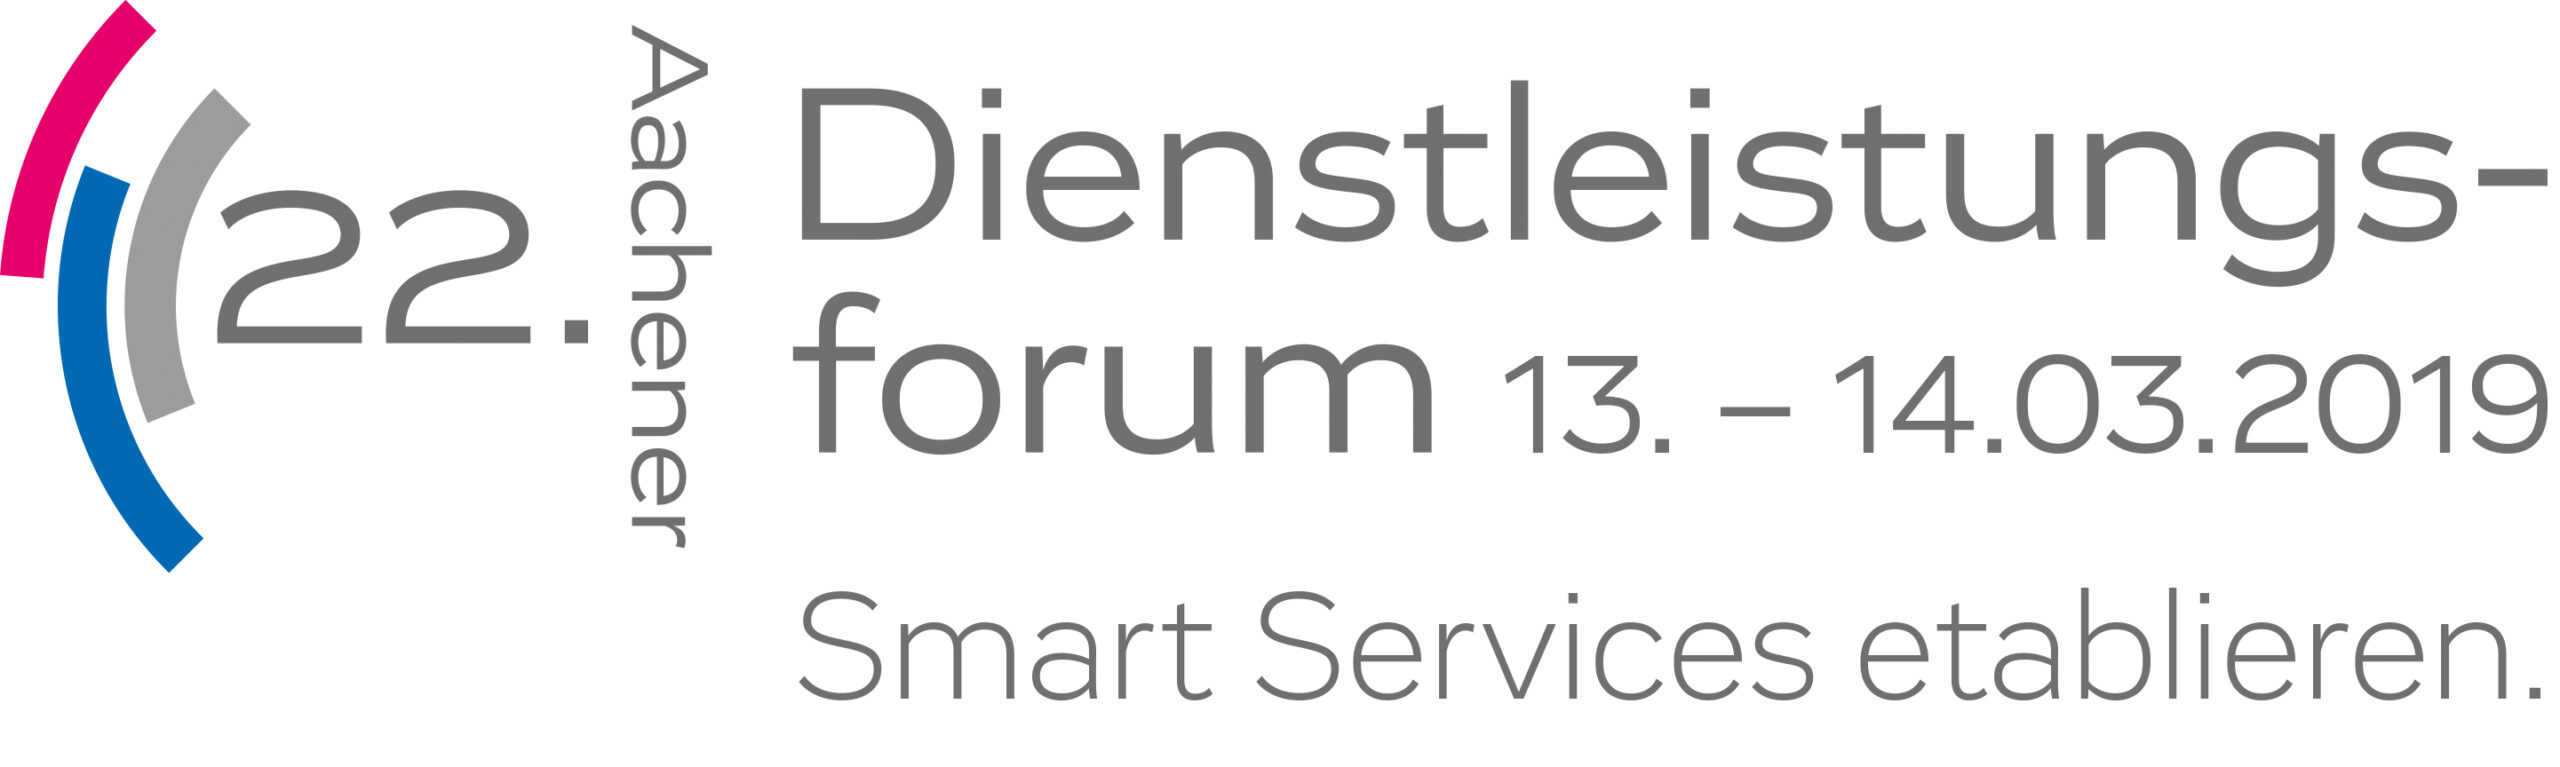 22. Aachener Dienstleistungsforum - Smart Services etablieren